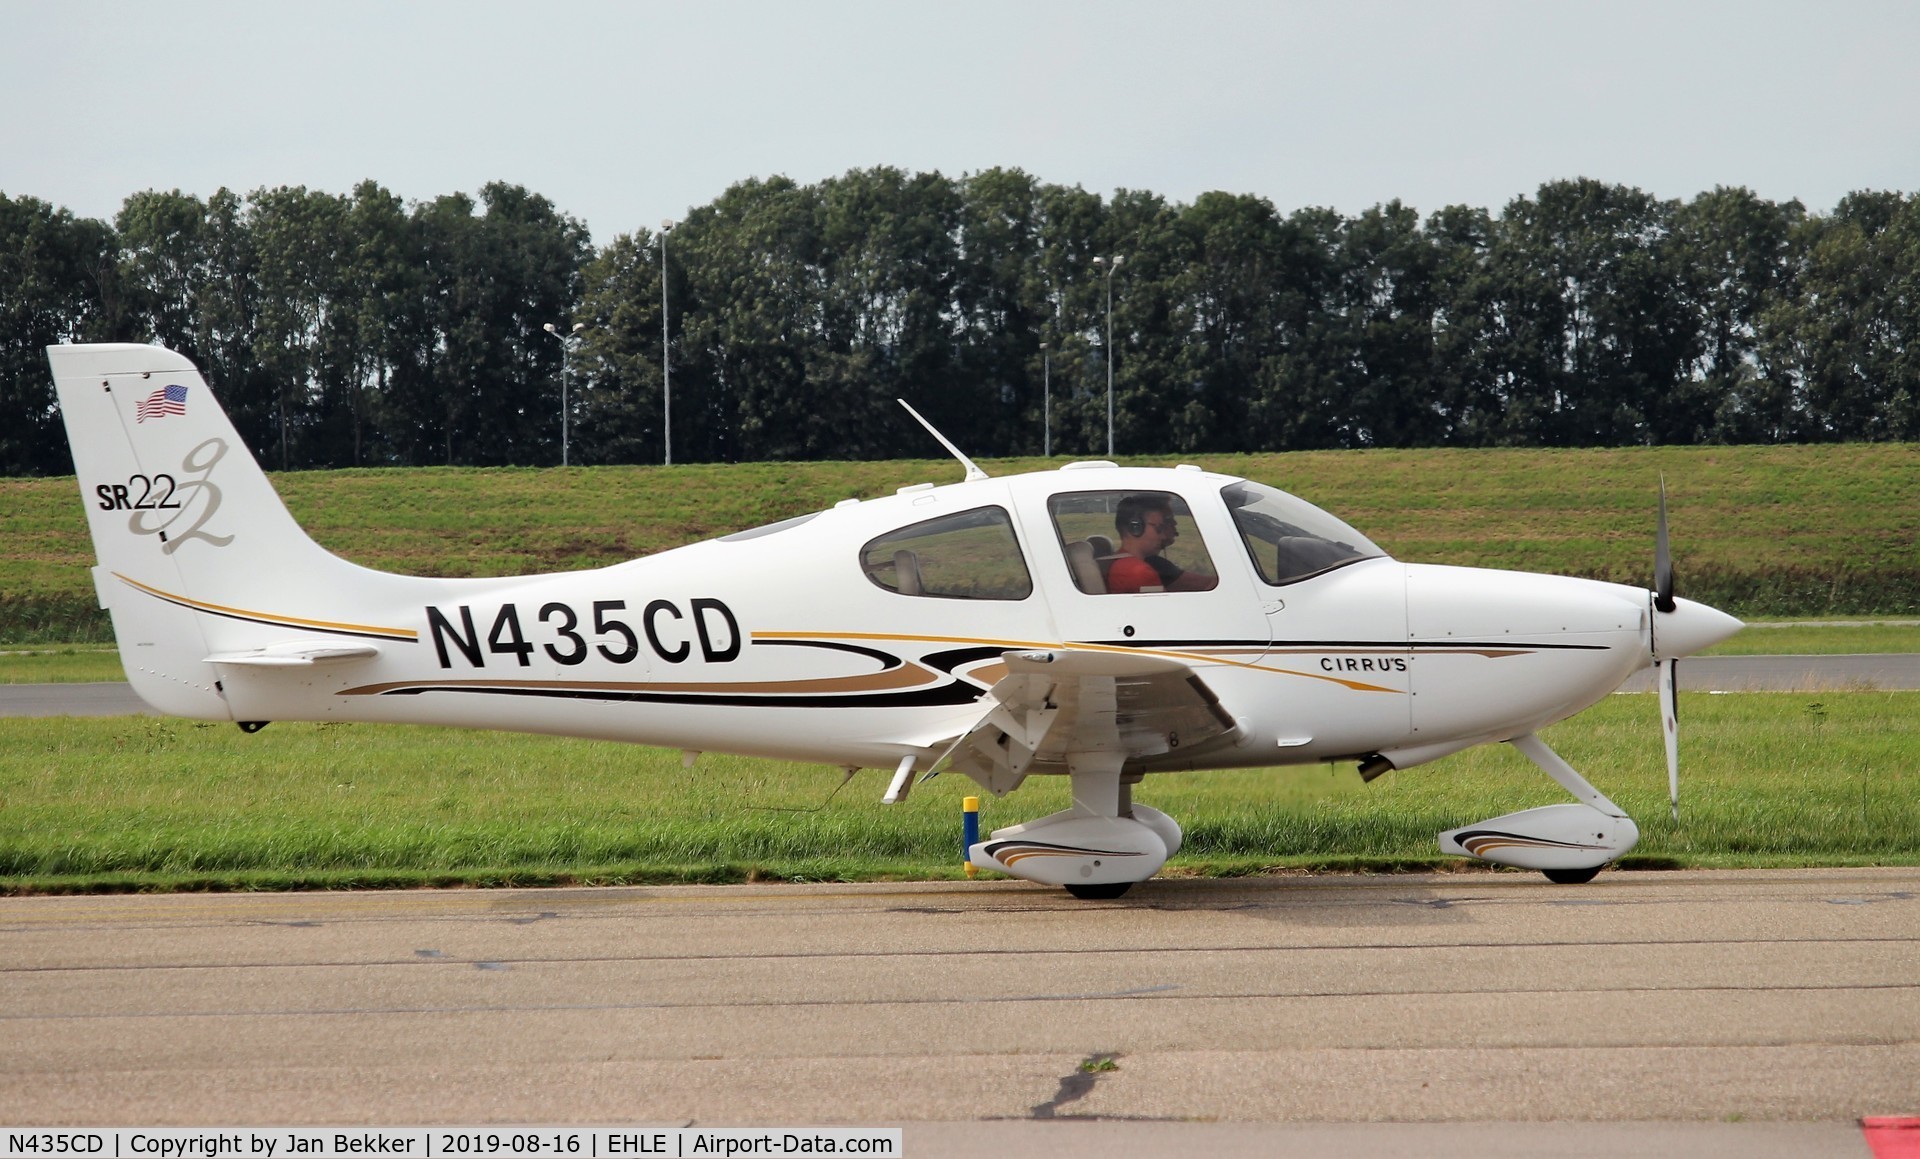 N435CD, 2004 Cirrus SR22 G2 C/N 0836, Lelystad Airport